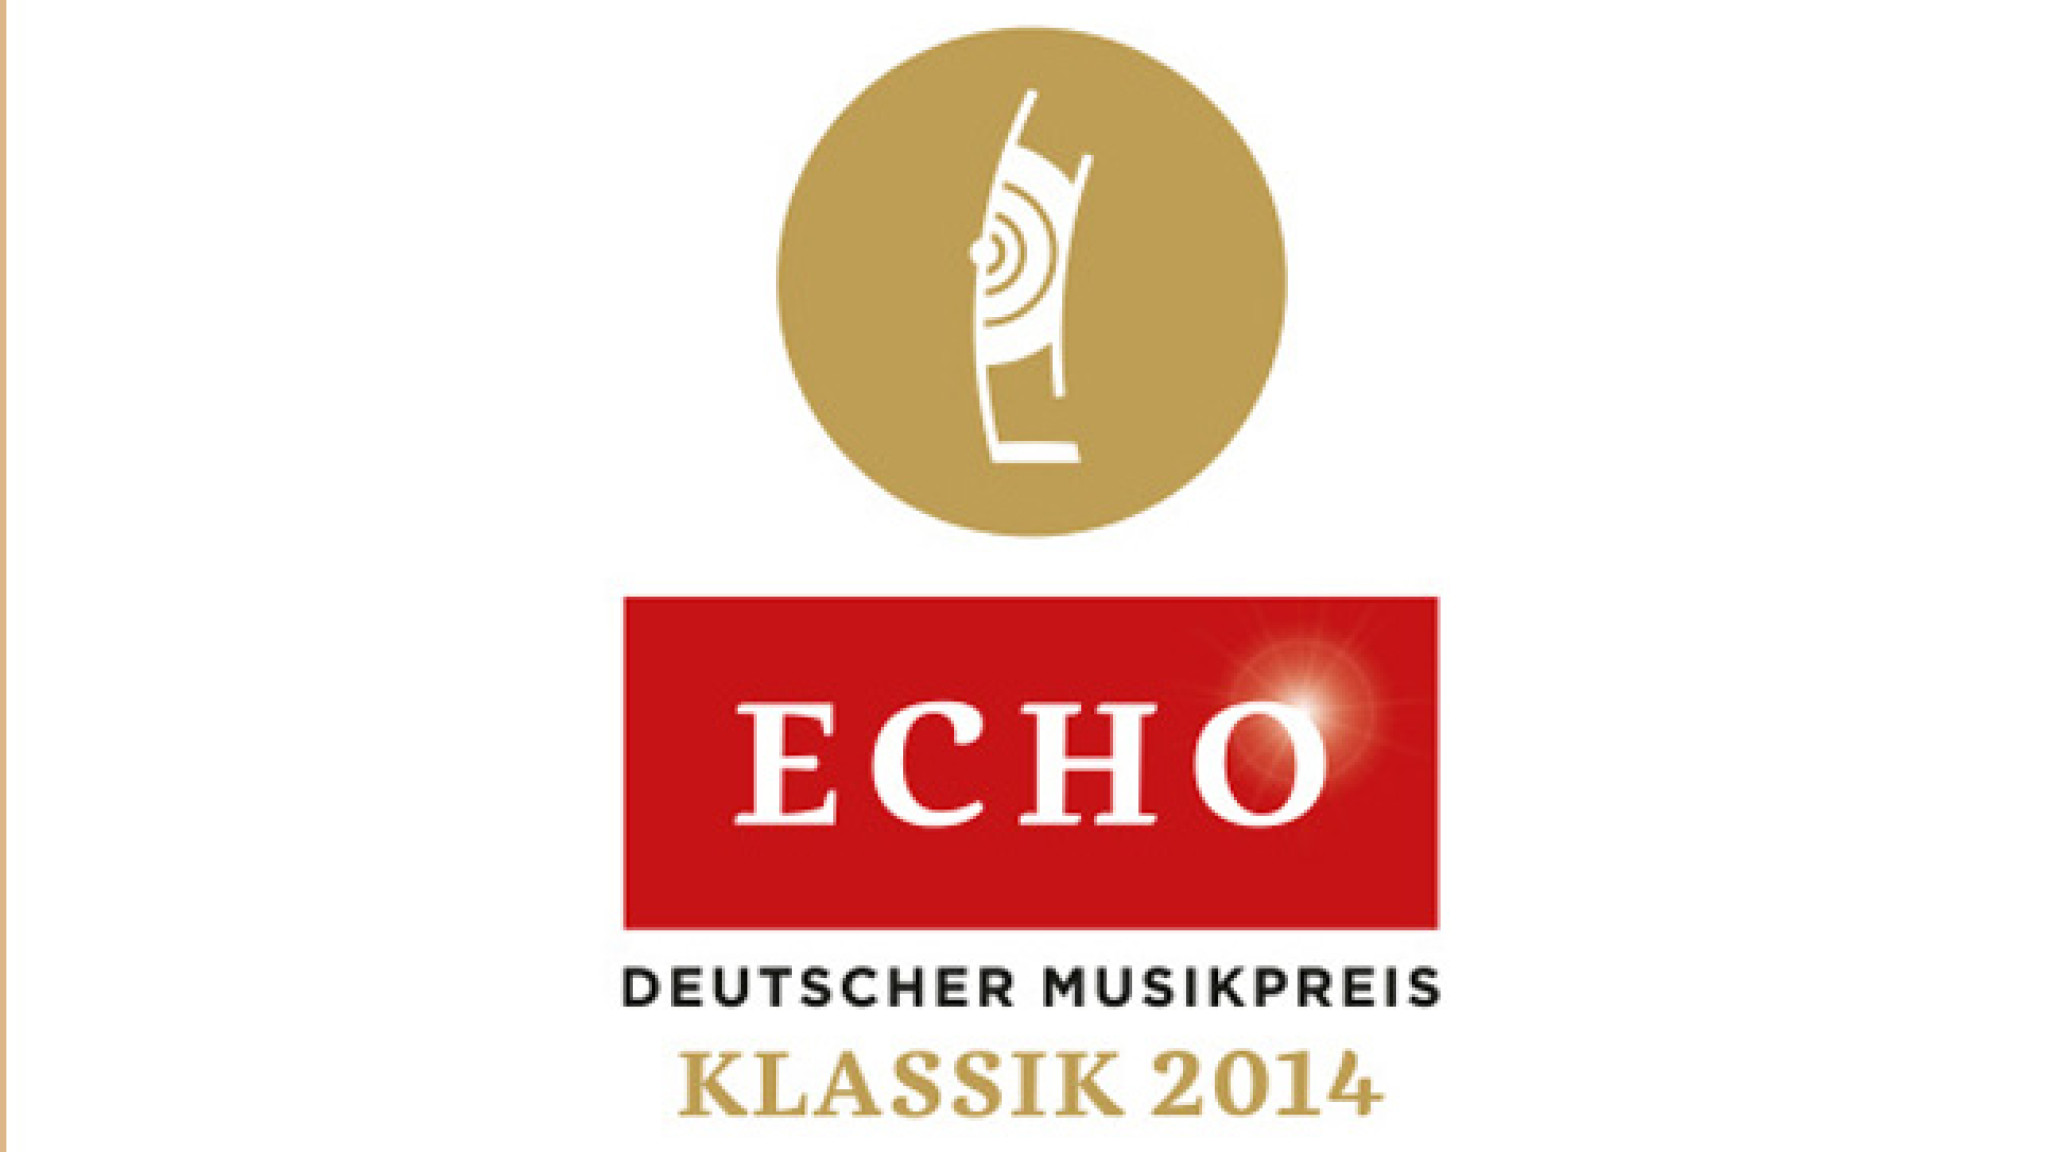 ECHO Klassik-Preisverleihung am 26. Oktober 2014 in München: Anna Netrebko, Jonas Kaufmann und Diana Damrau unter den Preisträgern.